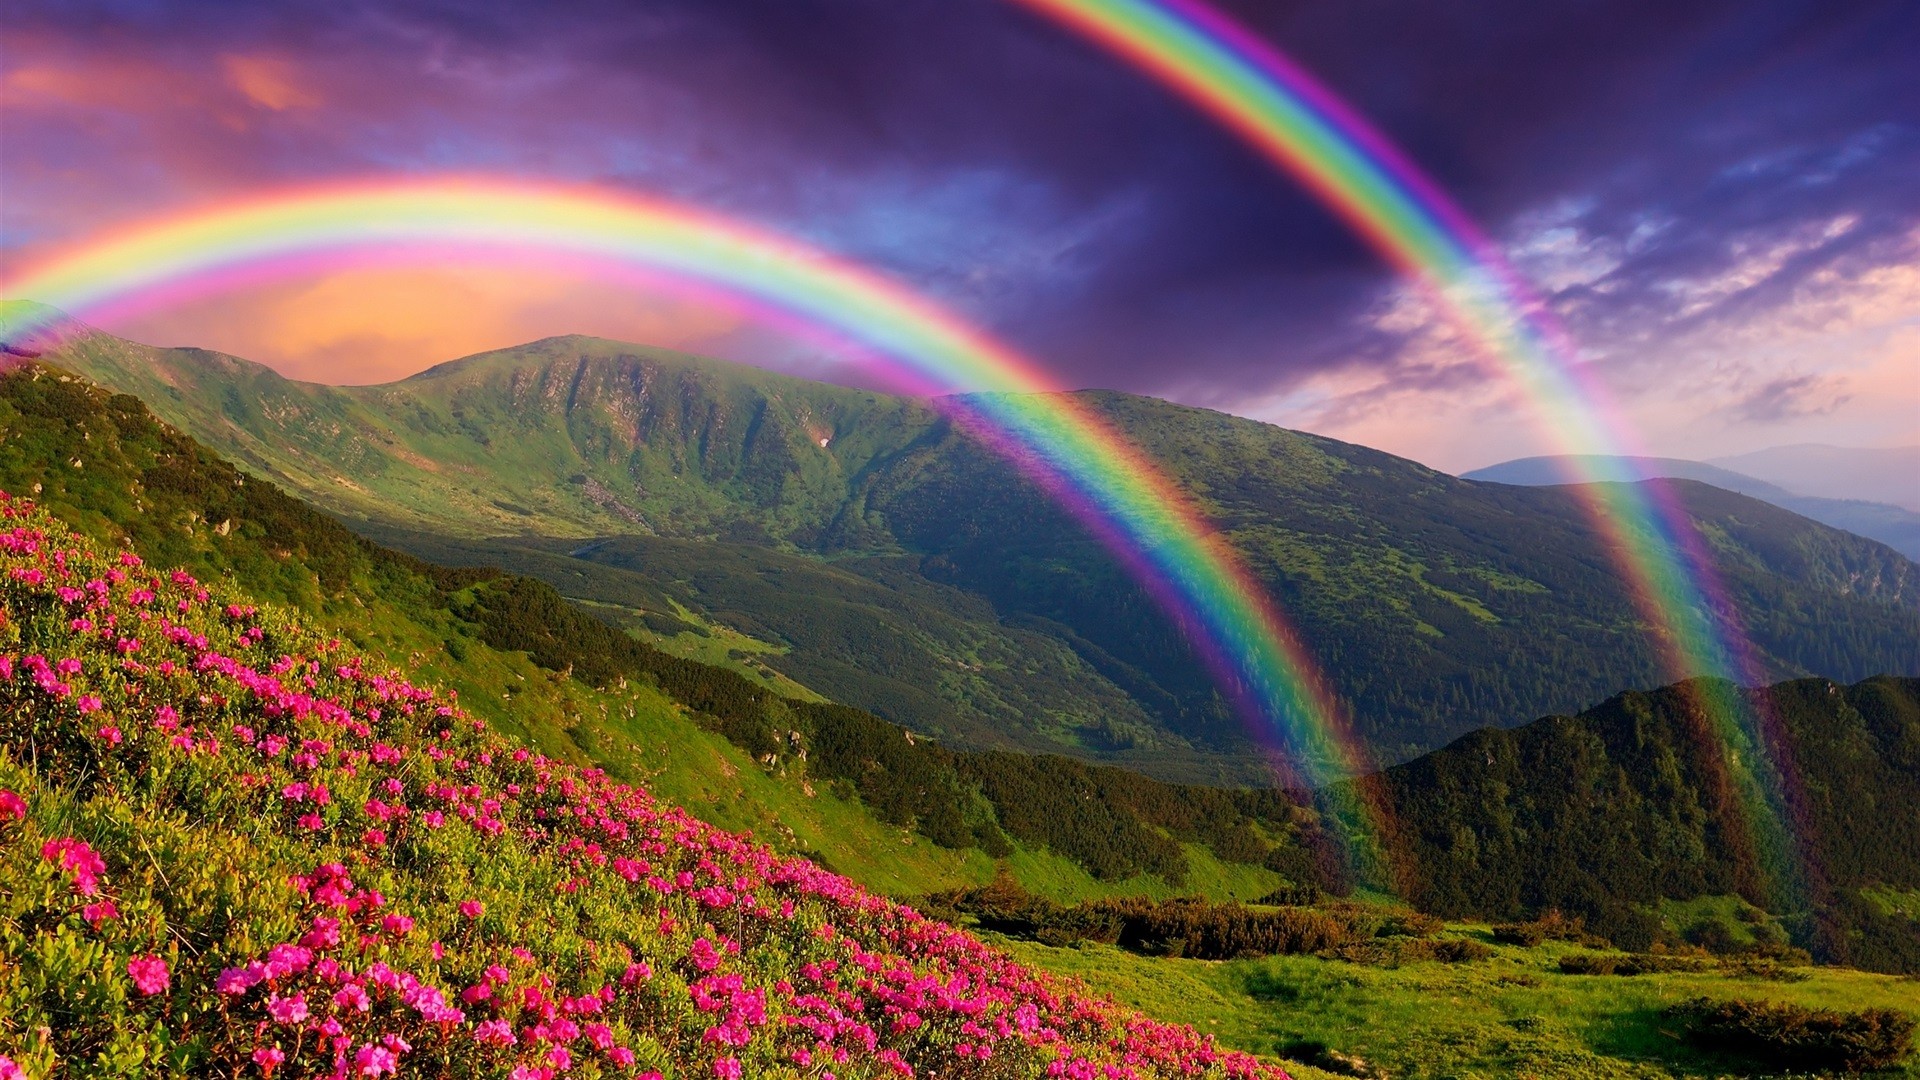 General 1920x1080 nature rainbows flowers landscape mountains plants colorful sky